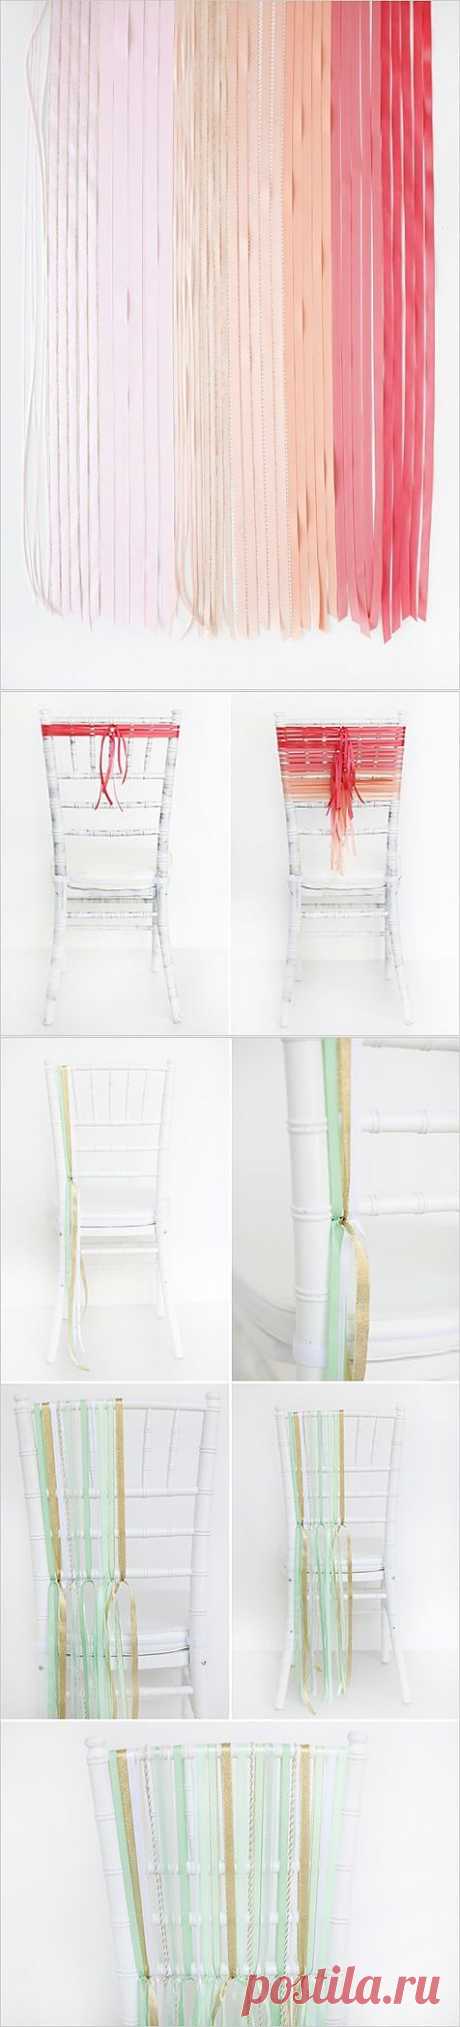 Кастомайзинг стульев: украшение плетением